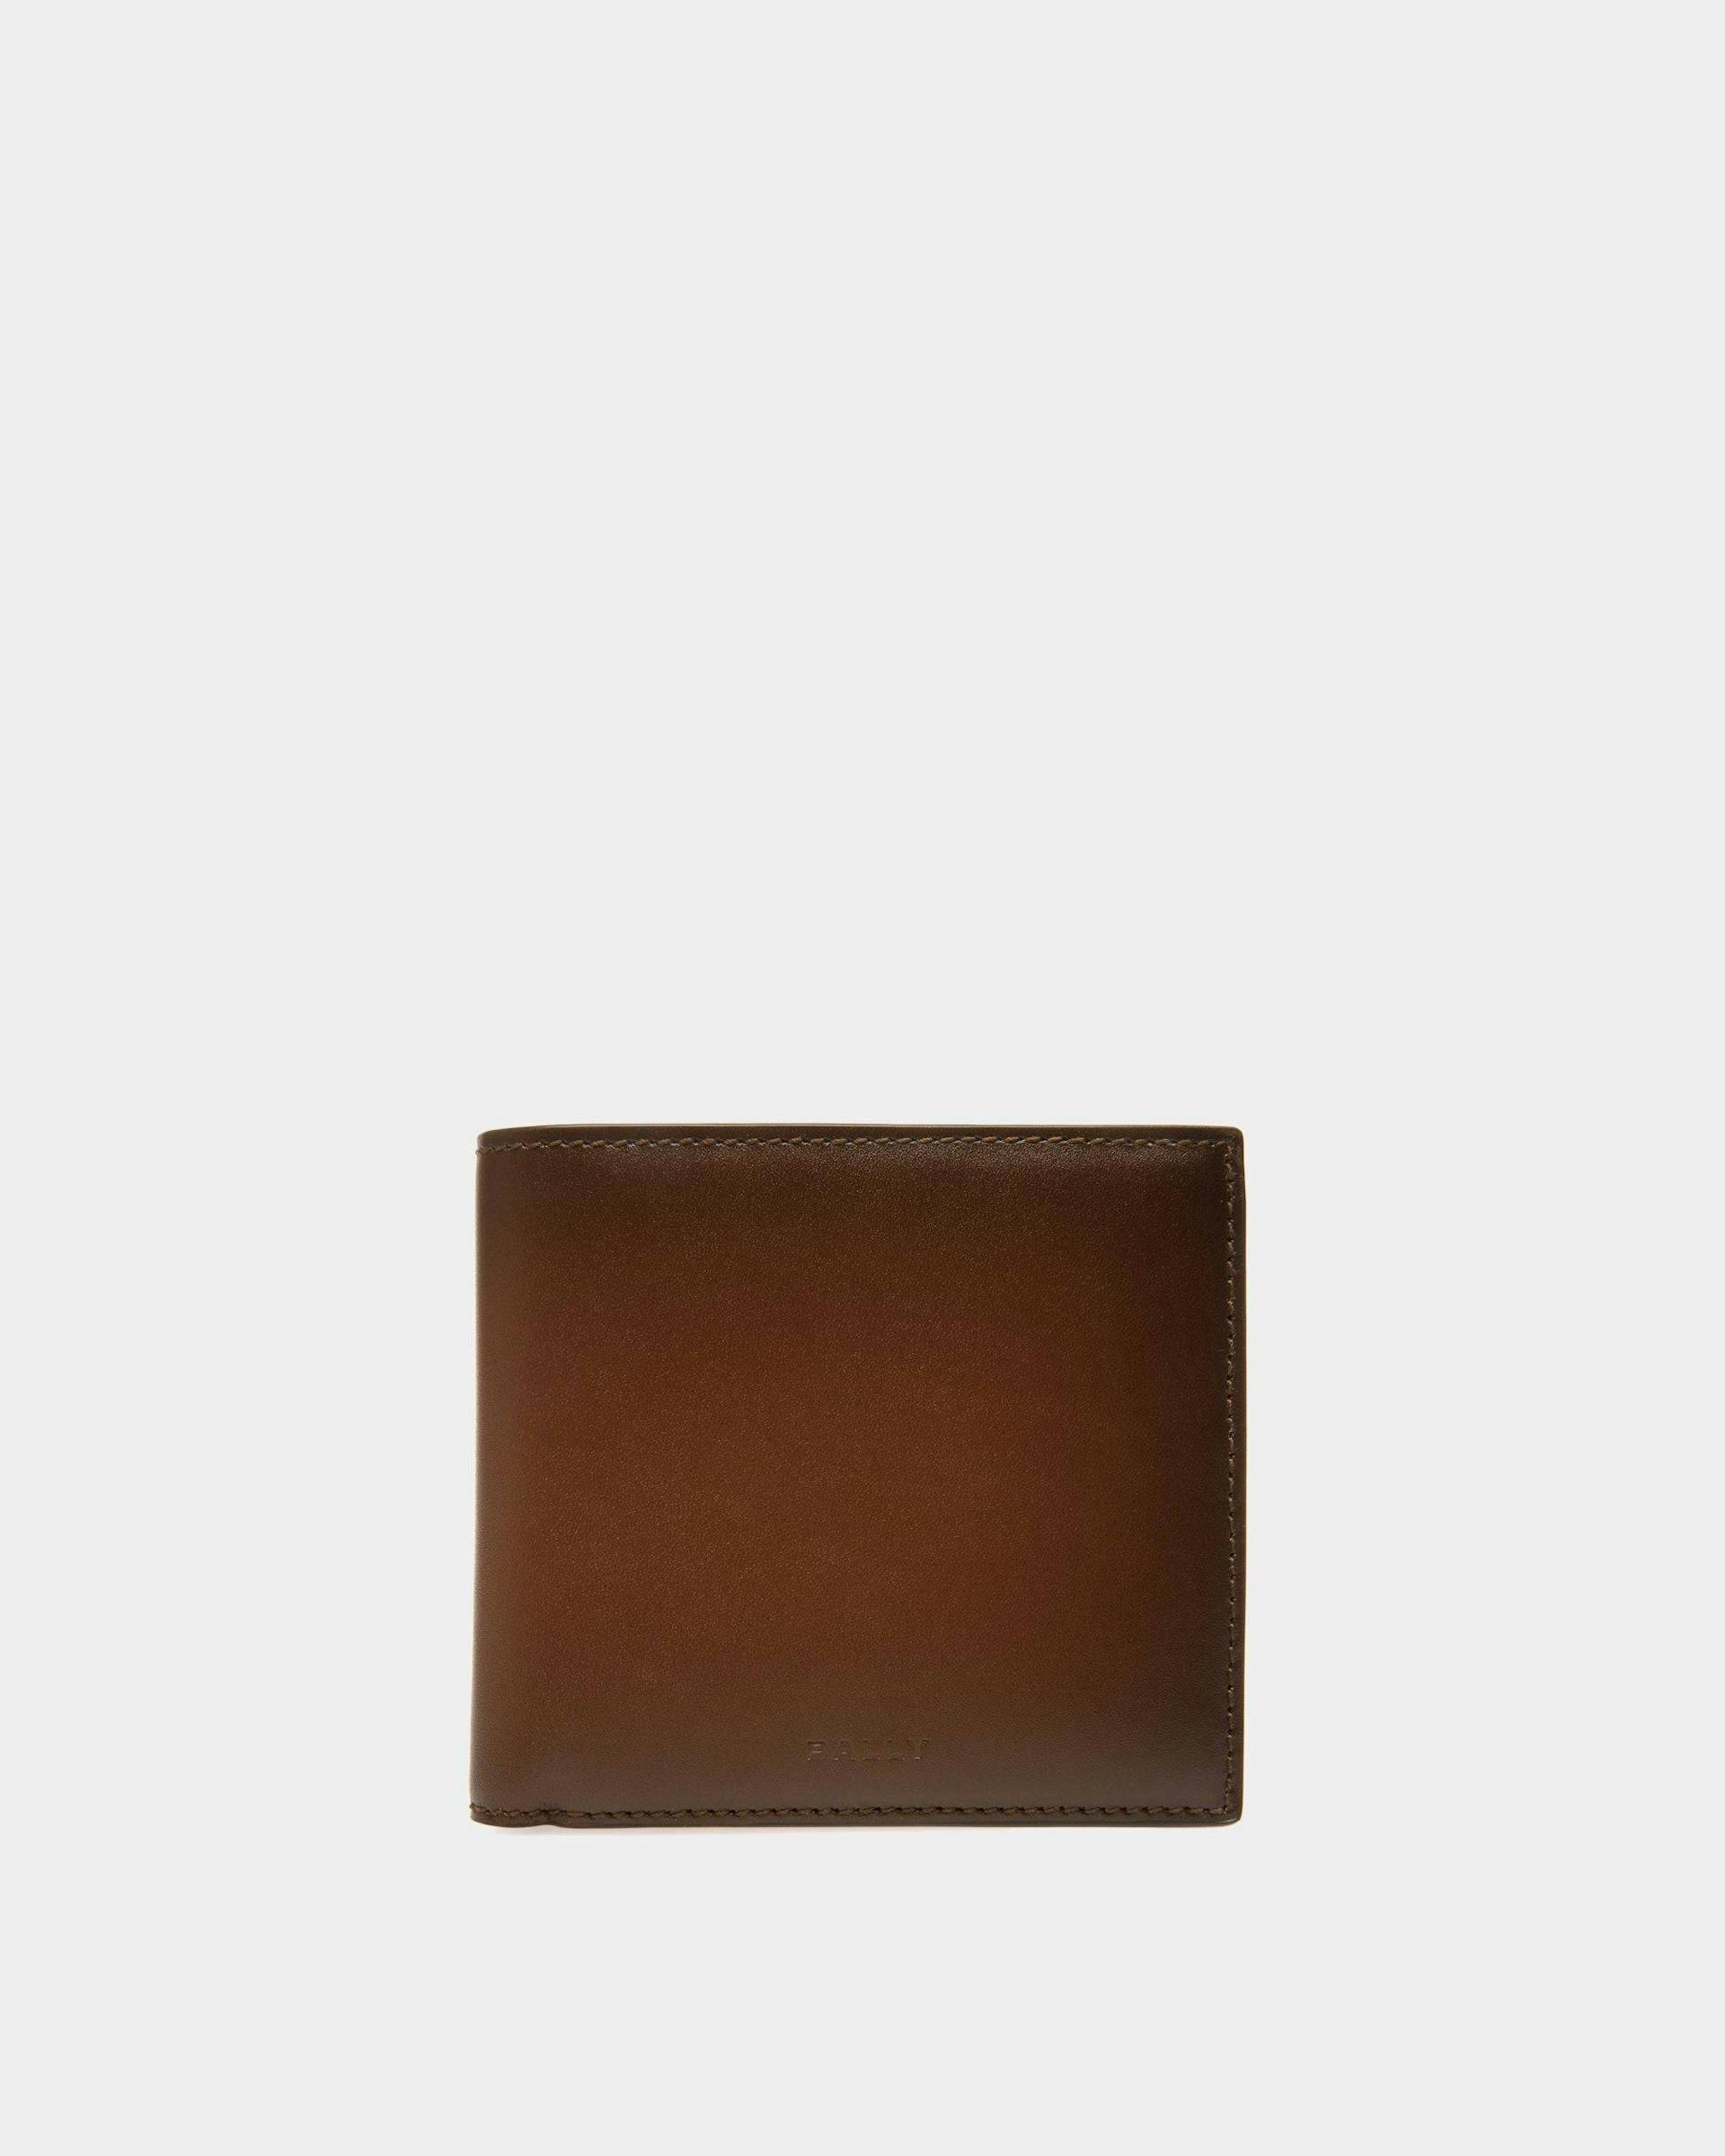 Speciale Bi-fold Wallet - Bally